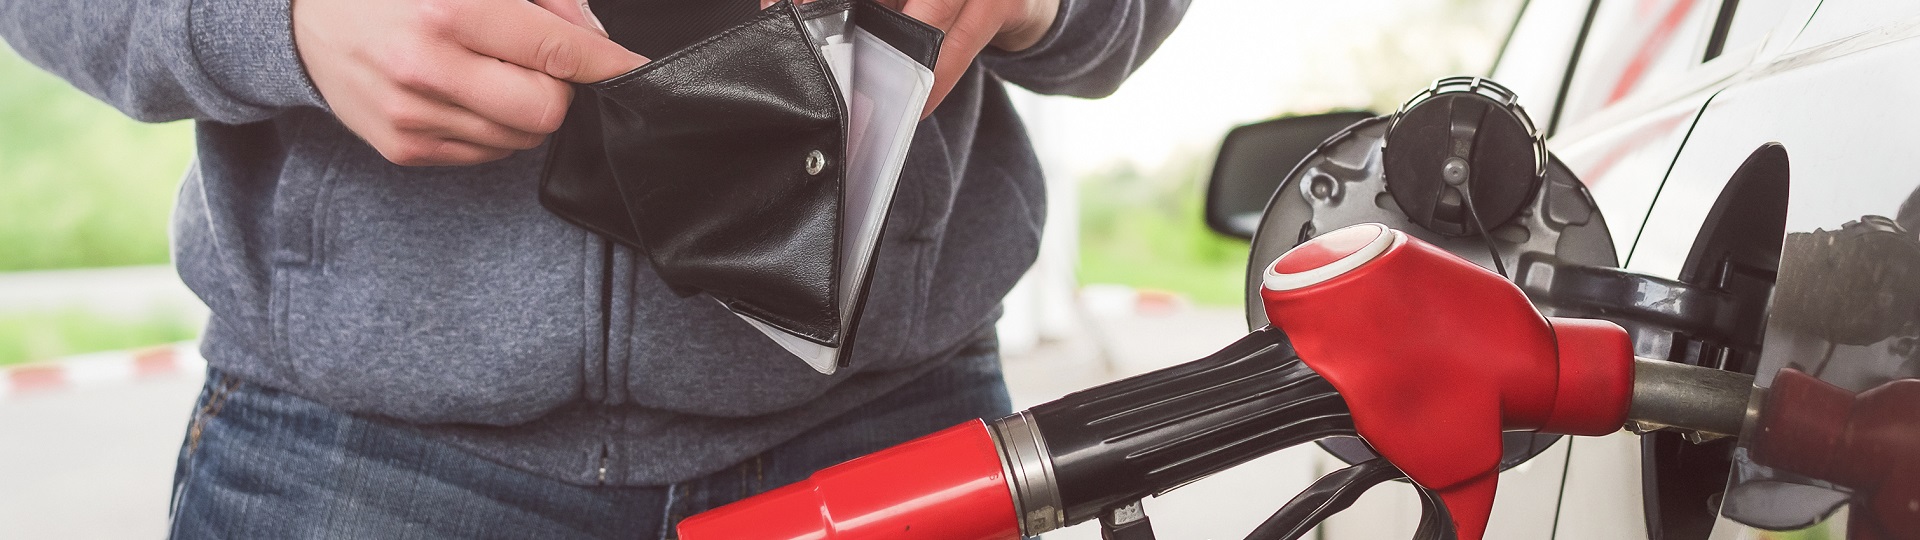 Cena nafty se přibližuje ceně benzínu